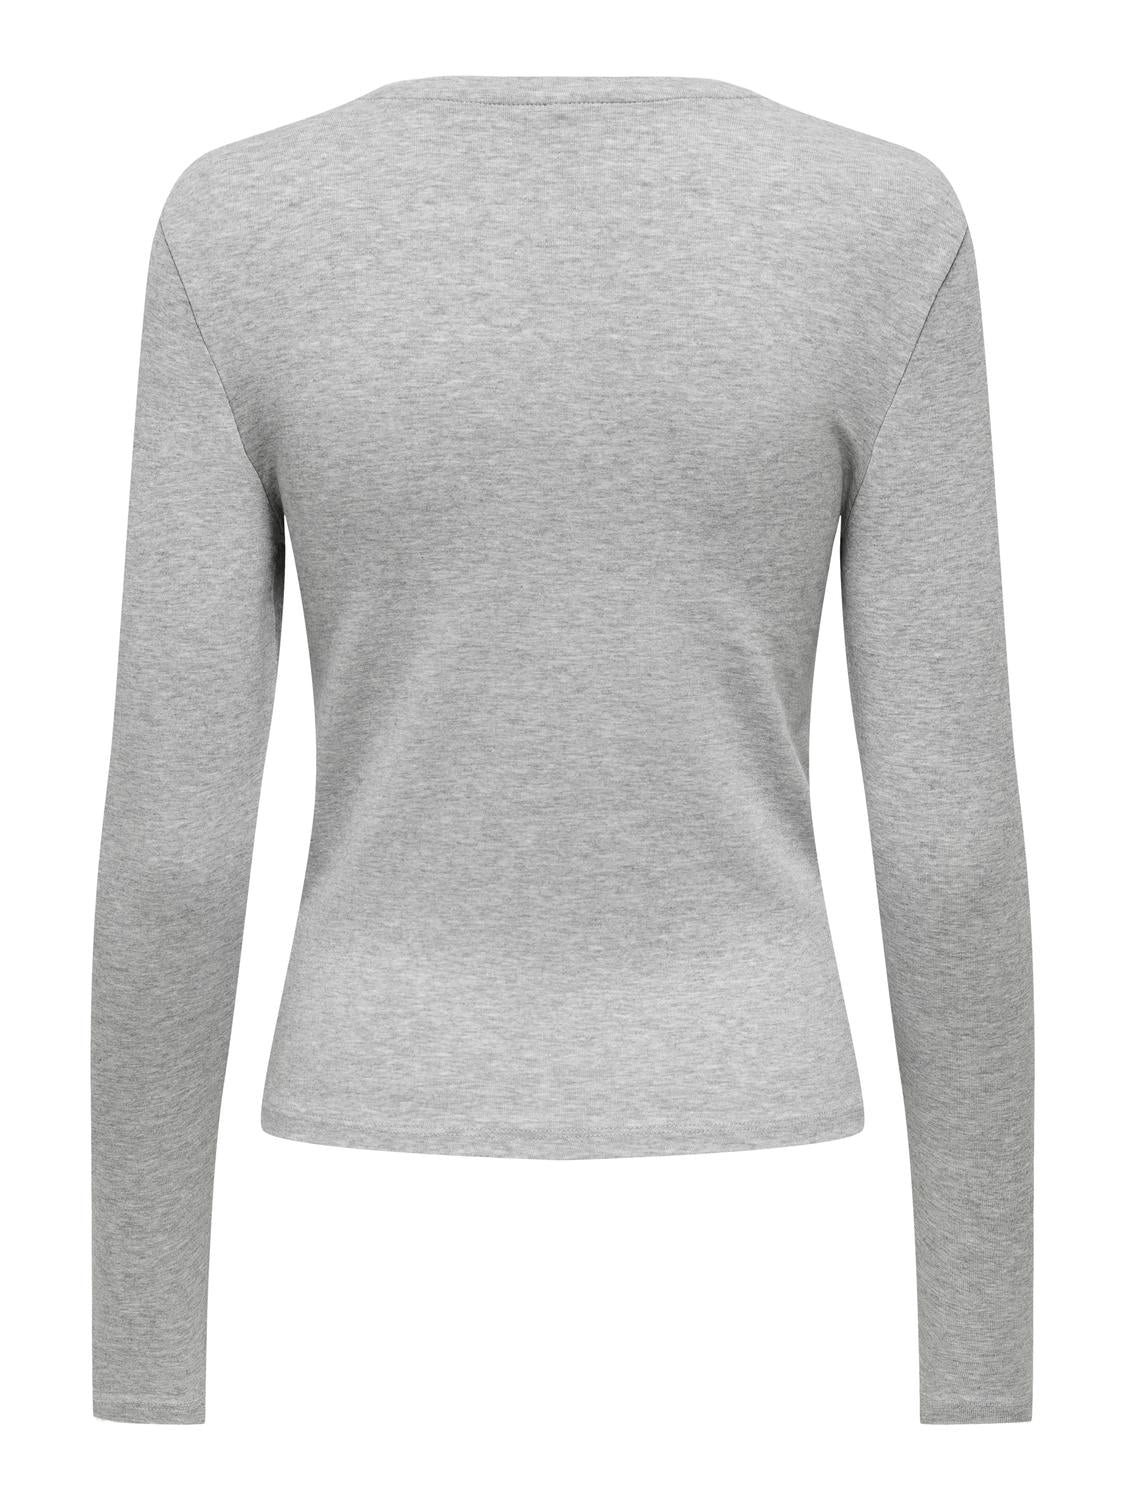 PGRILEY T-Shirt - Light Grey Melange